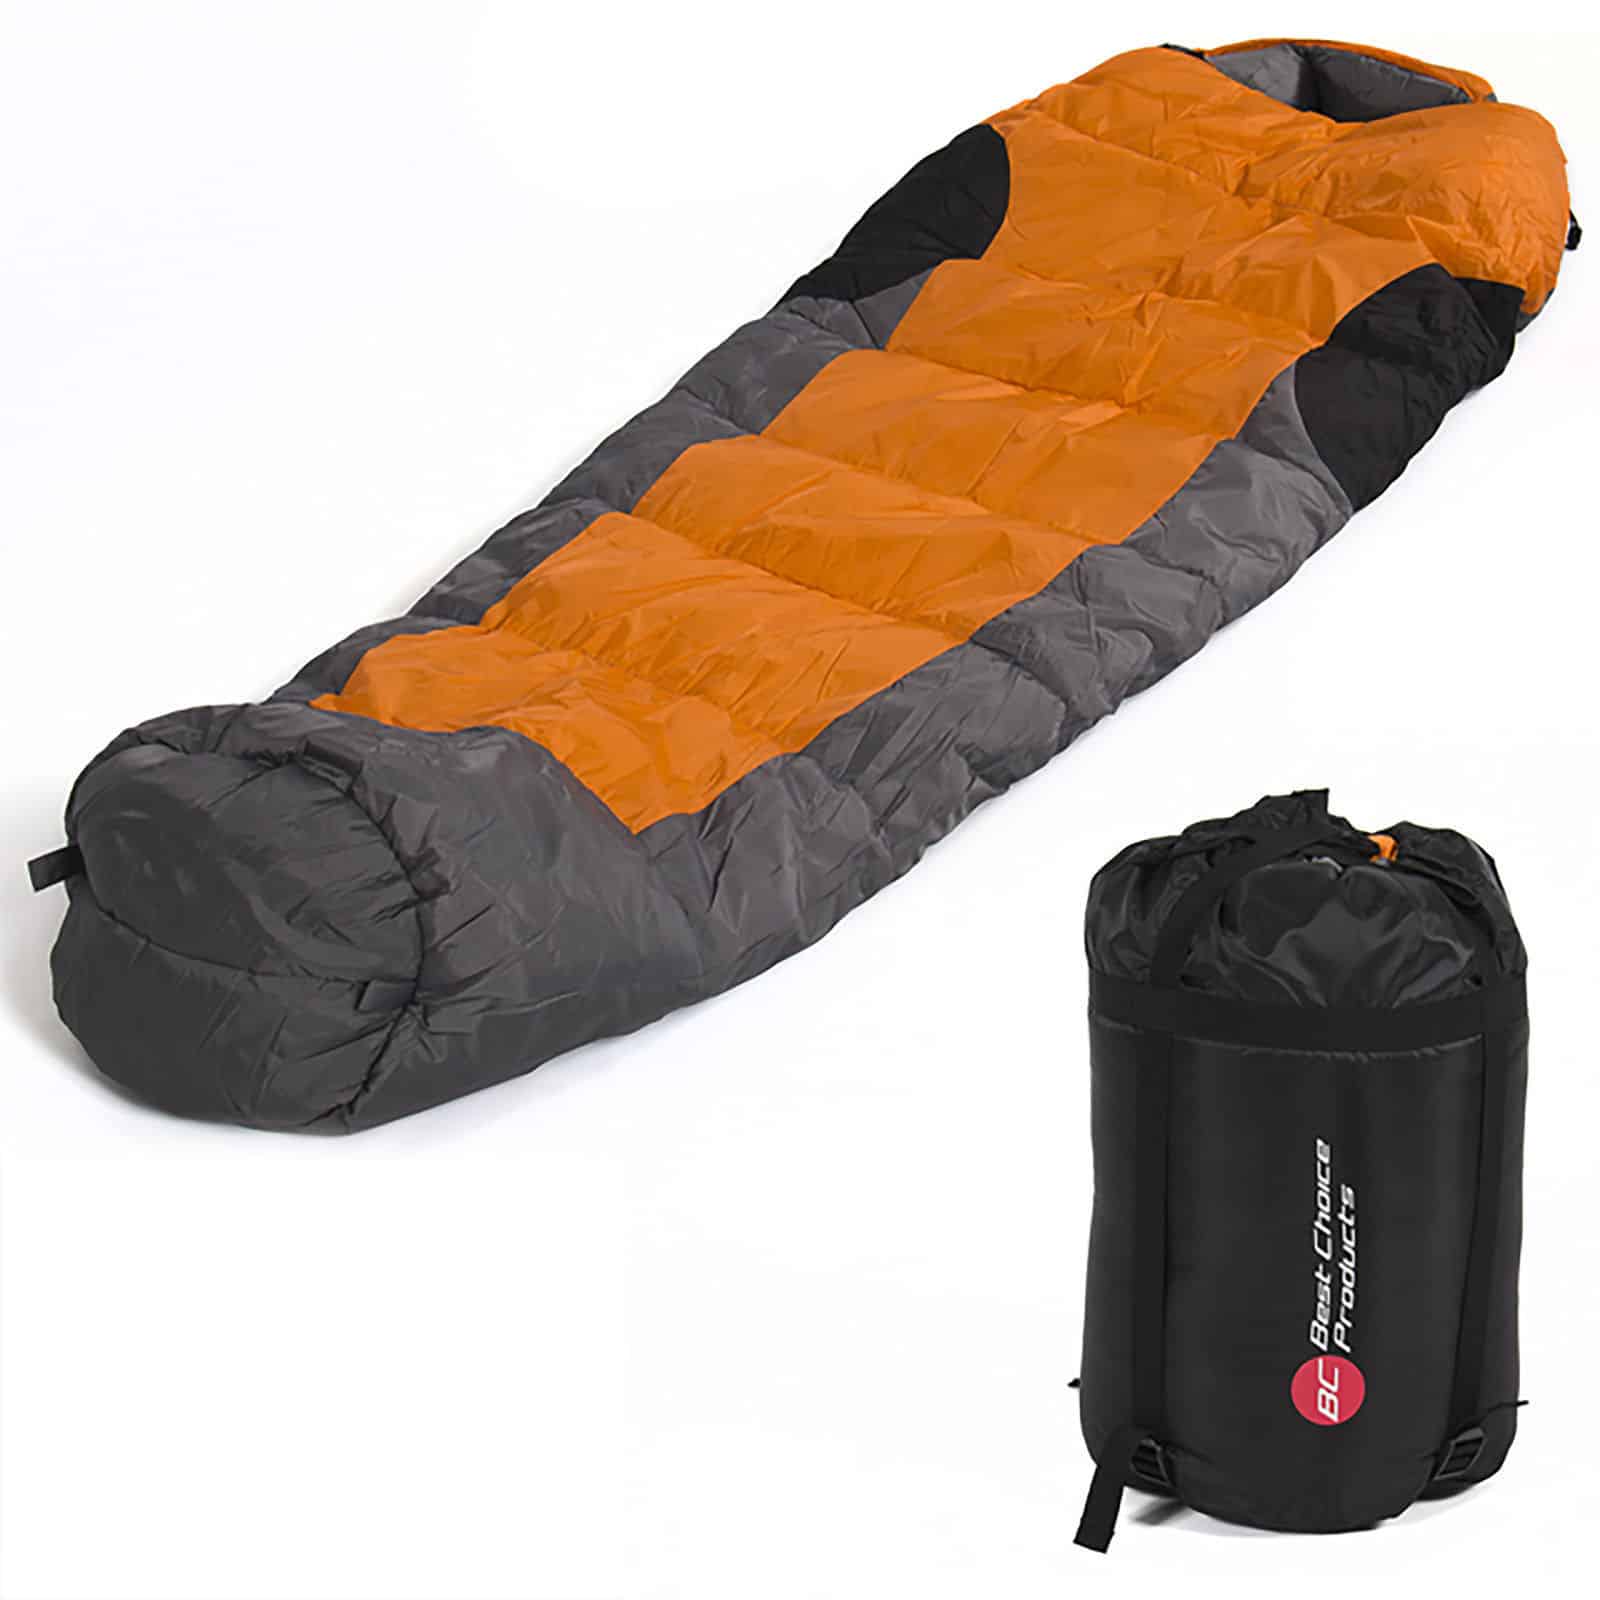 Kompakter Schlafsack für nur 14,20 Euro inkl. Versand!